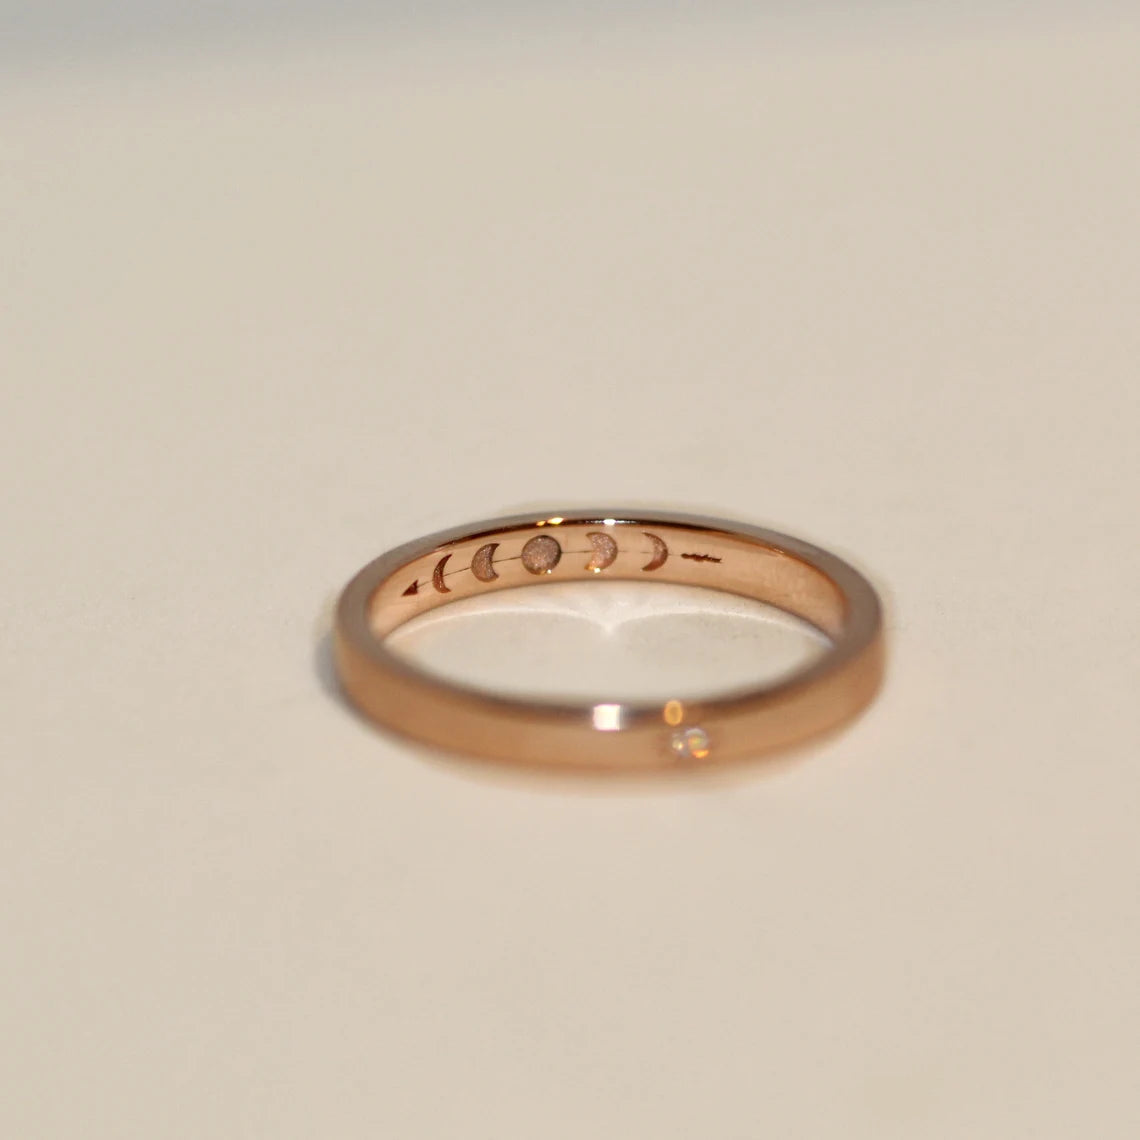 Custom Ring for Abigail Maller - 14k Diamond  with Moon Engraving Ring.